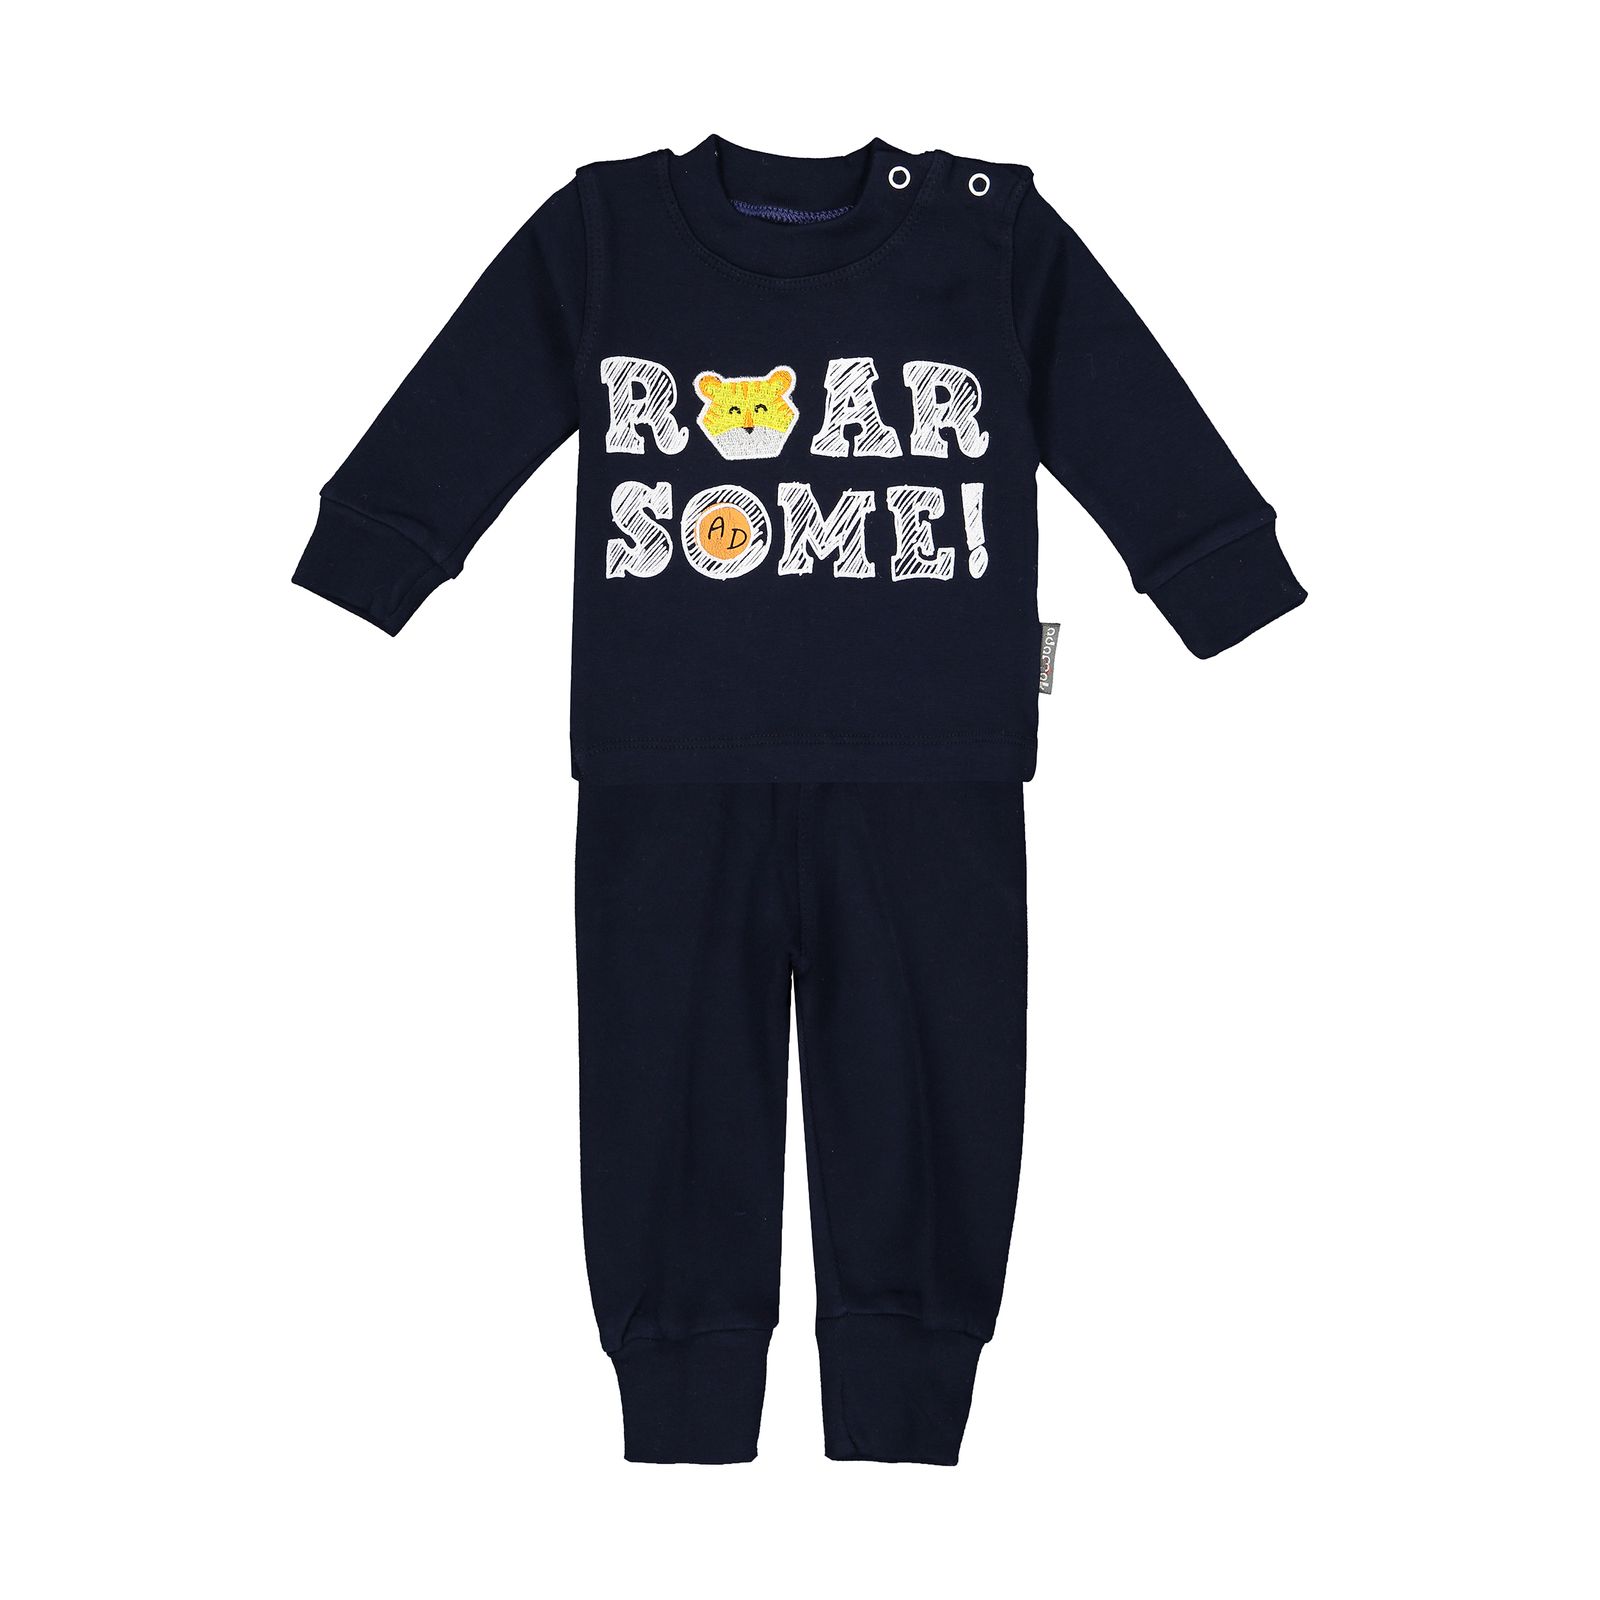 ست تی شرت و شلوار نوزادی پسرانه آدمک مدل 2171123-59 -  - 1